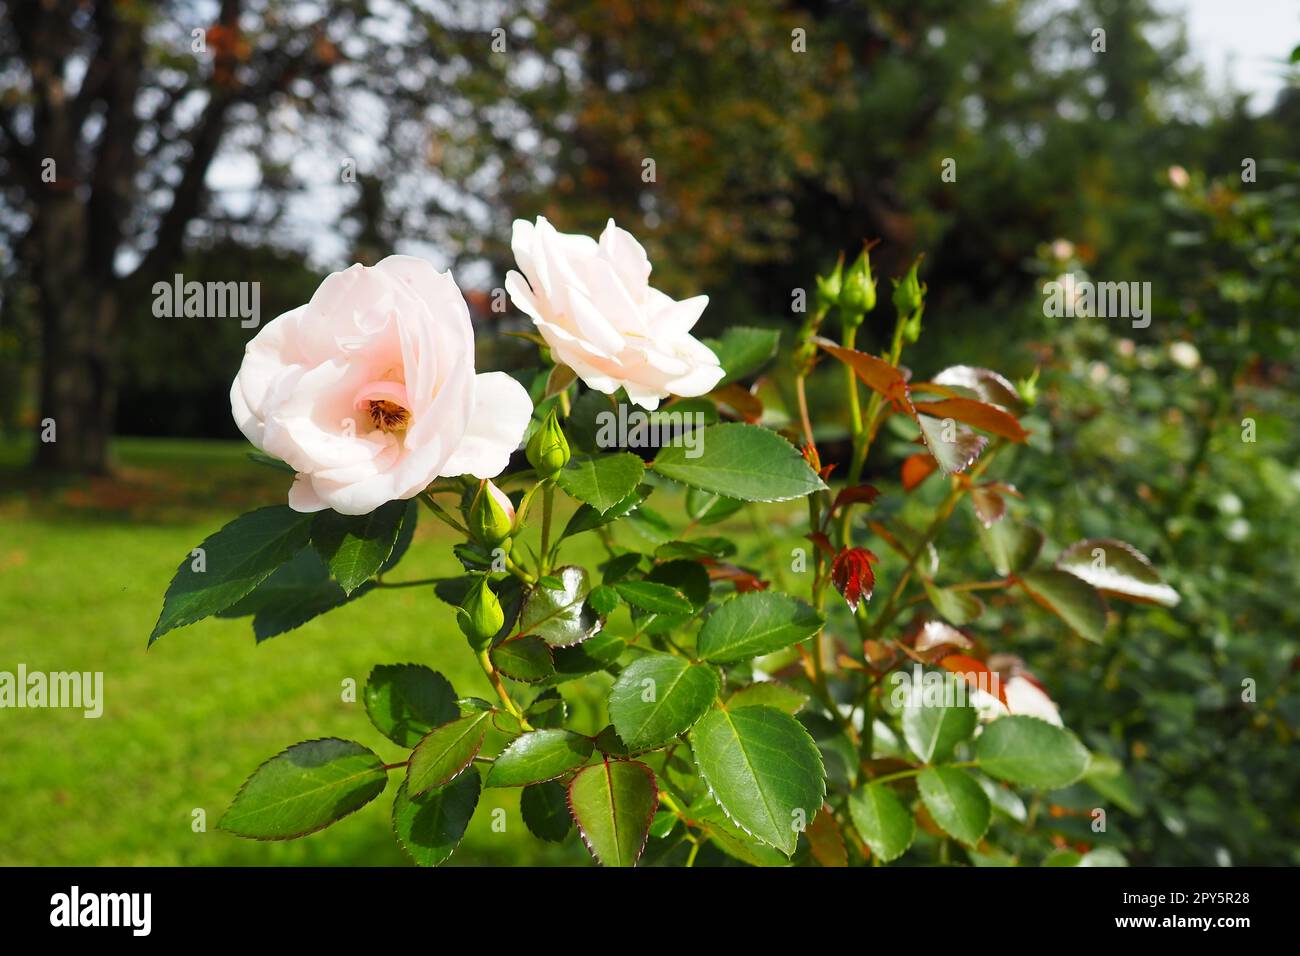 Weiße Rosen im Garten oder Park. Banja Koviljaca, Serbien. Ein Busch weißer Hybridrosen als Dekoration im Landschaftsdesign. Blumenzucht und Gartenarbeit als Hobby. Stockfoto